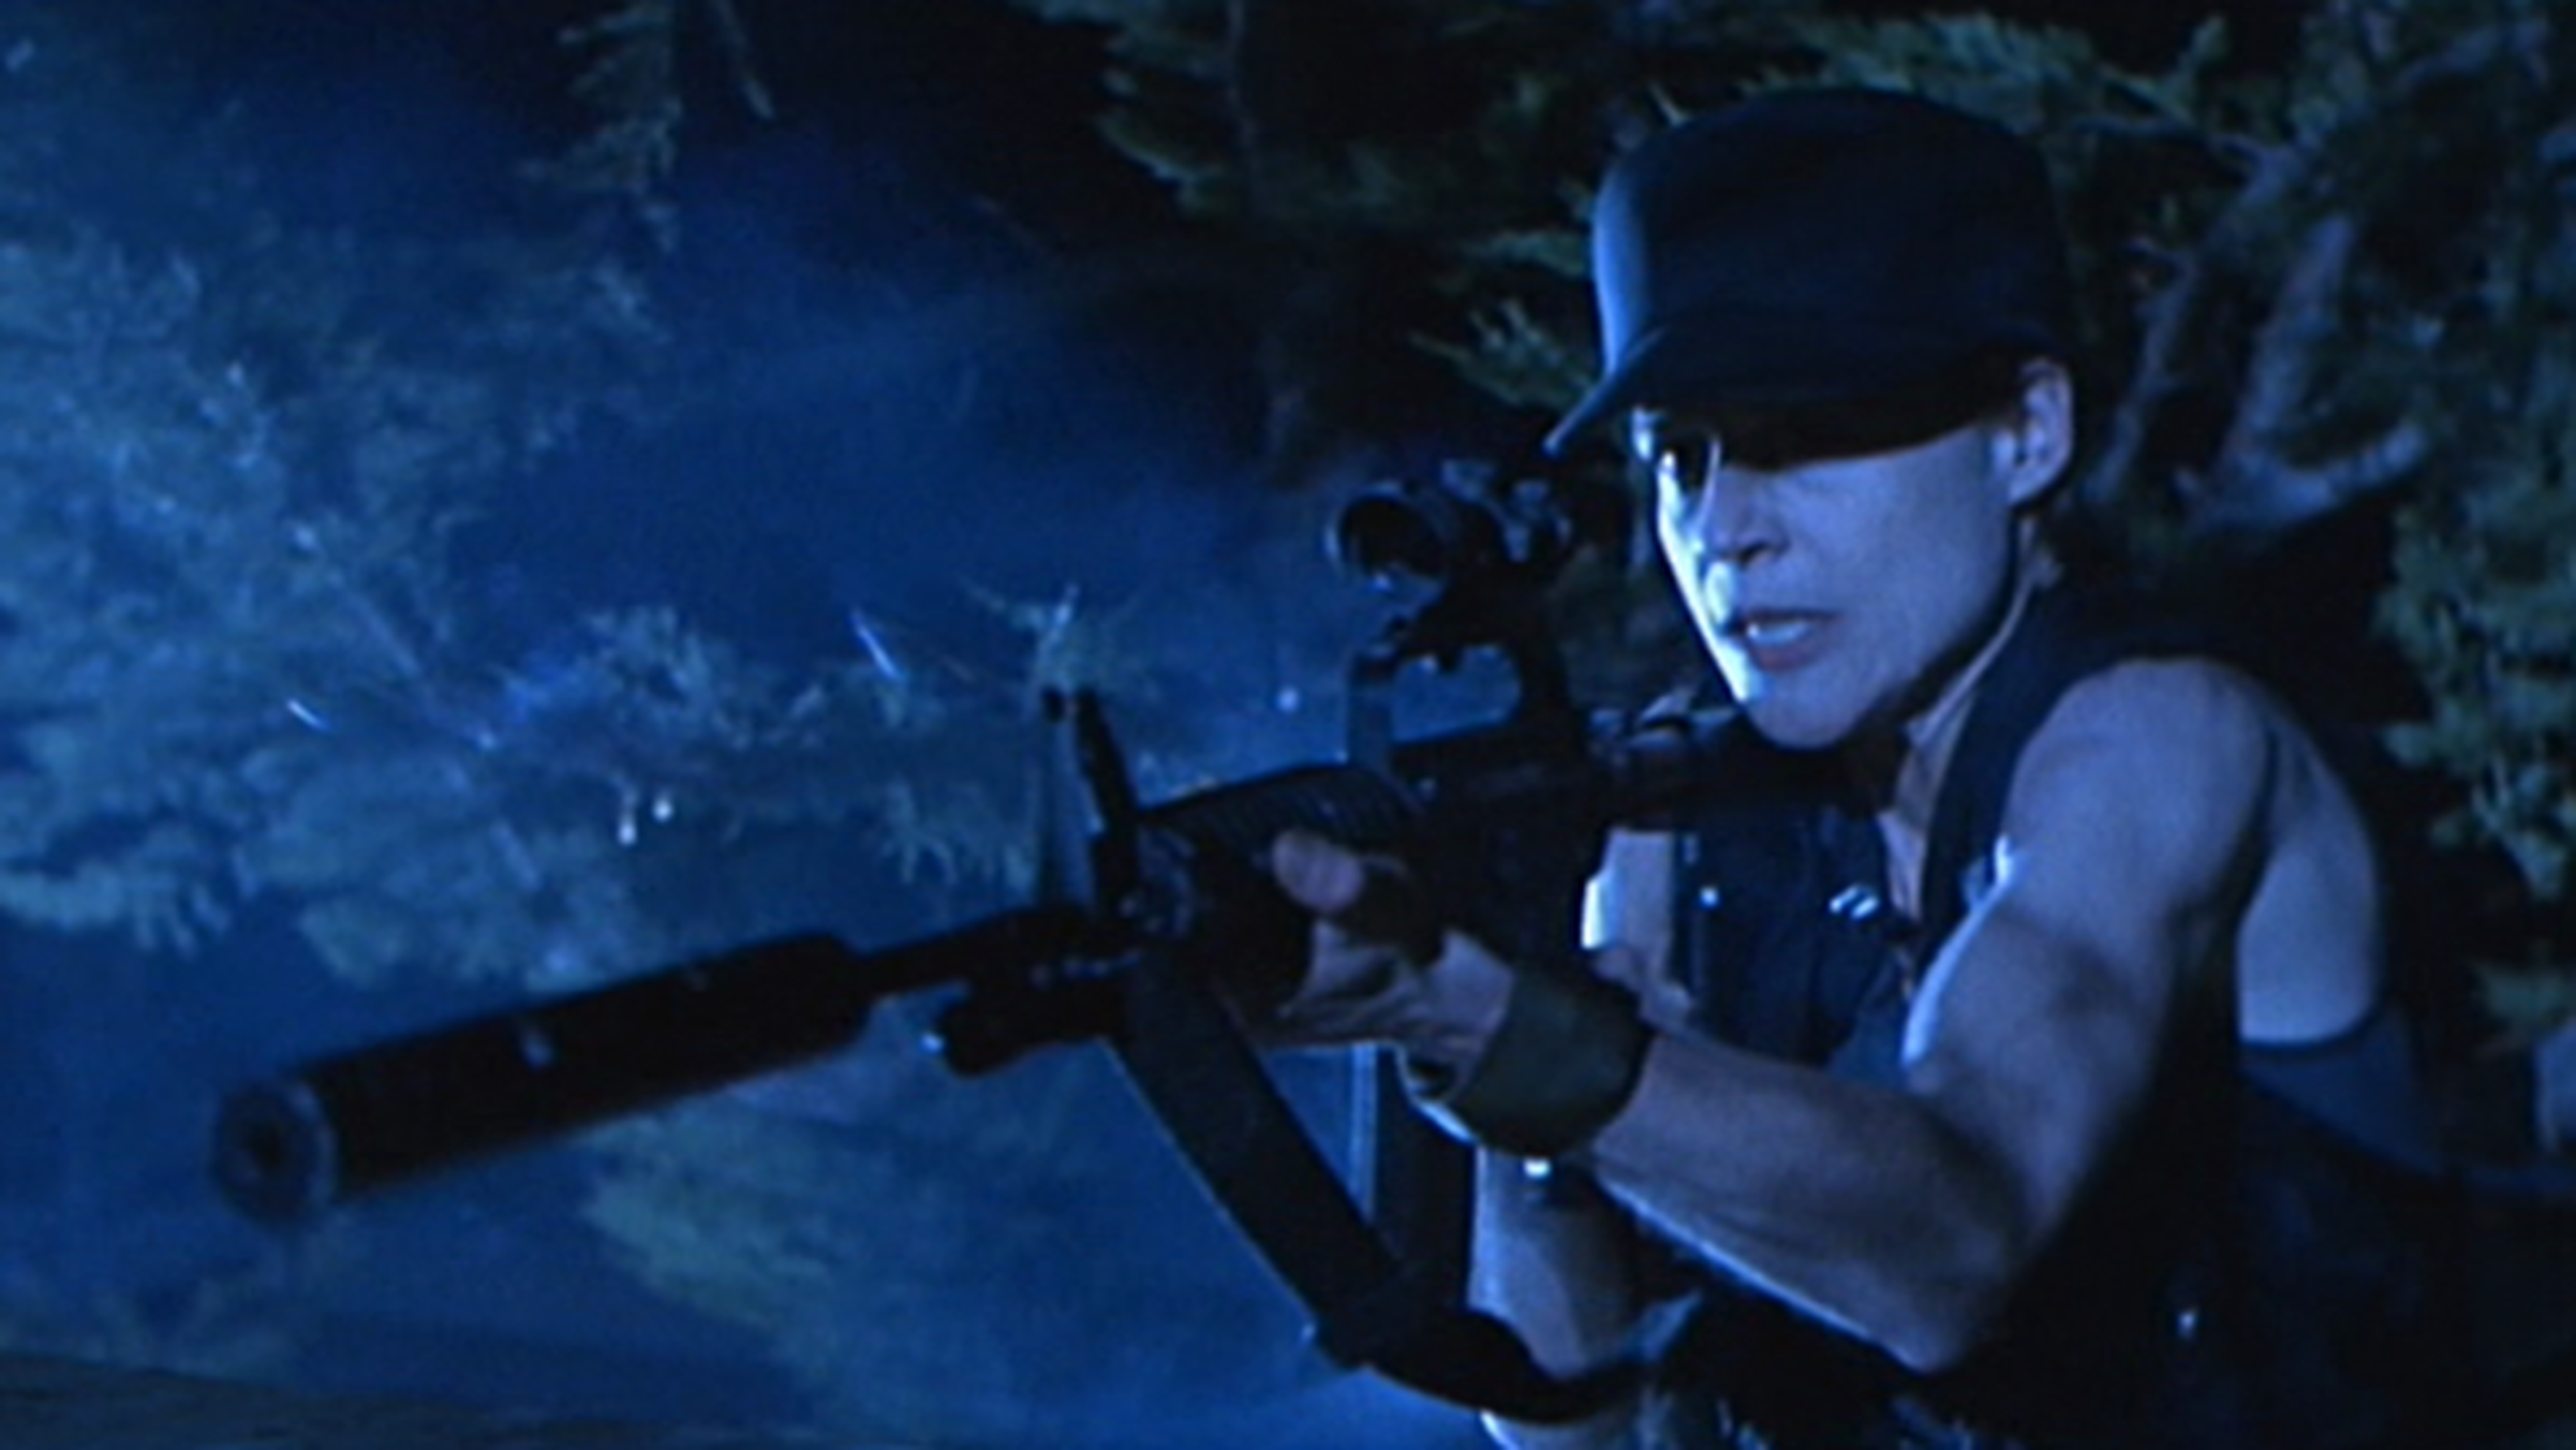 Cine de ciencia ficción: Terminator 2, el juicio final